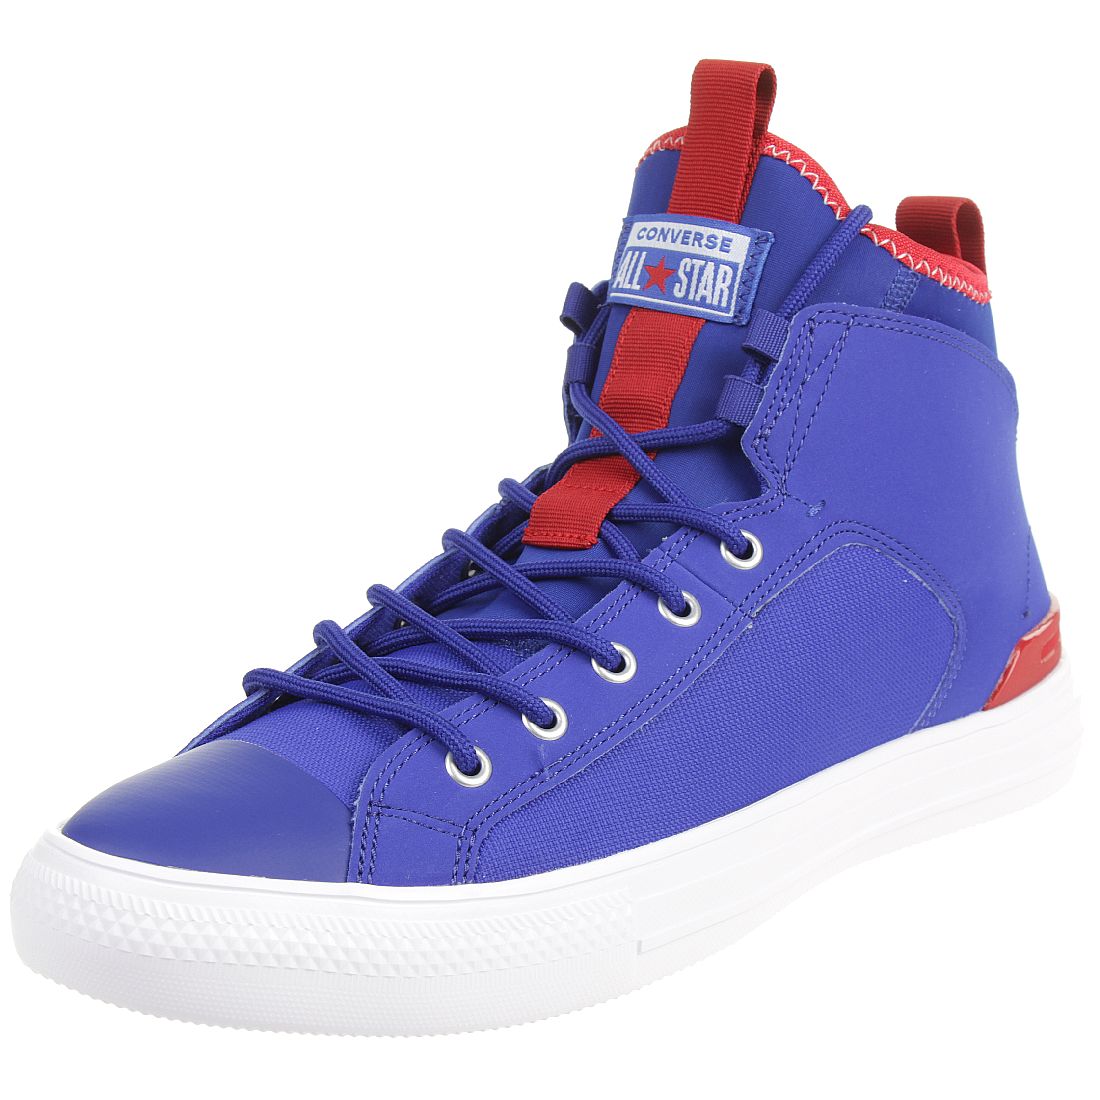 Converse CTAS ULTRA MID Chucks Schuhe Textil Sneaker Blau 165341C 